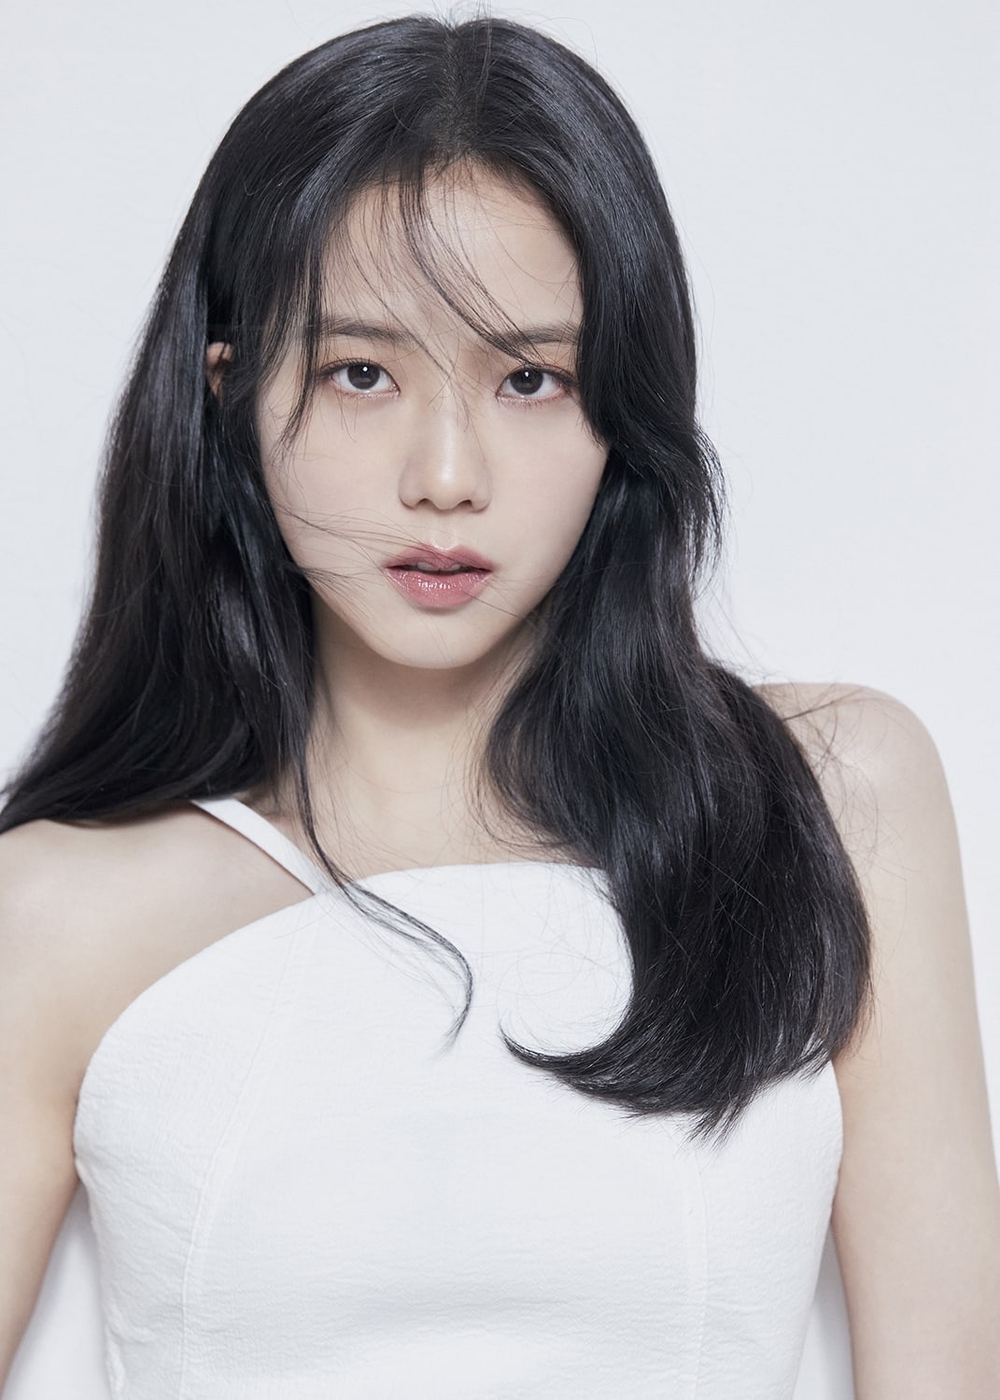 Top 10 Nữ Thần Kpop Đẹp Nhất 2022: Jisoo Vượt Irene Và Joy